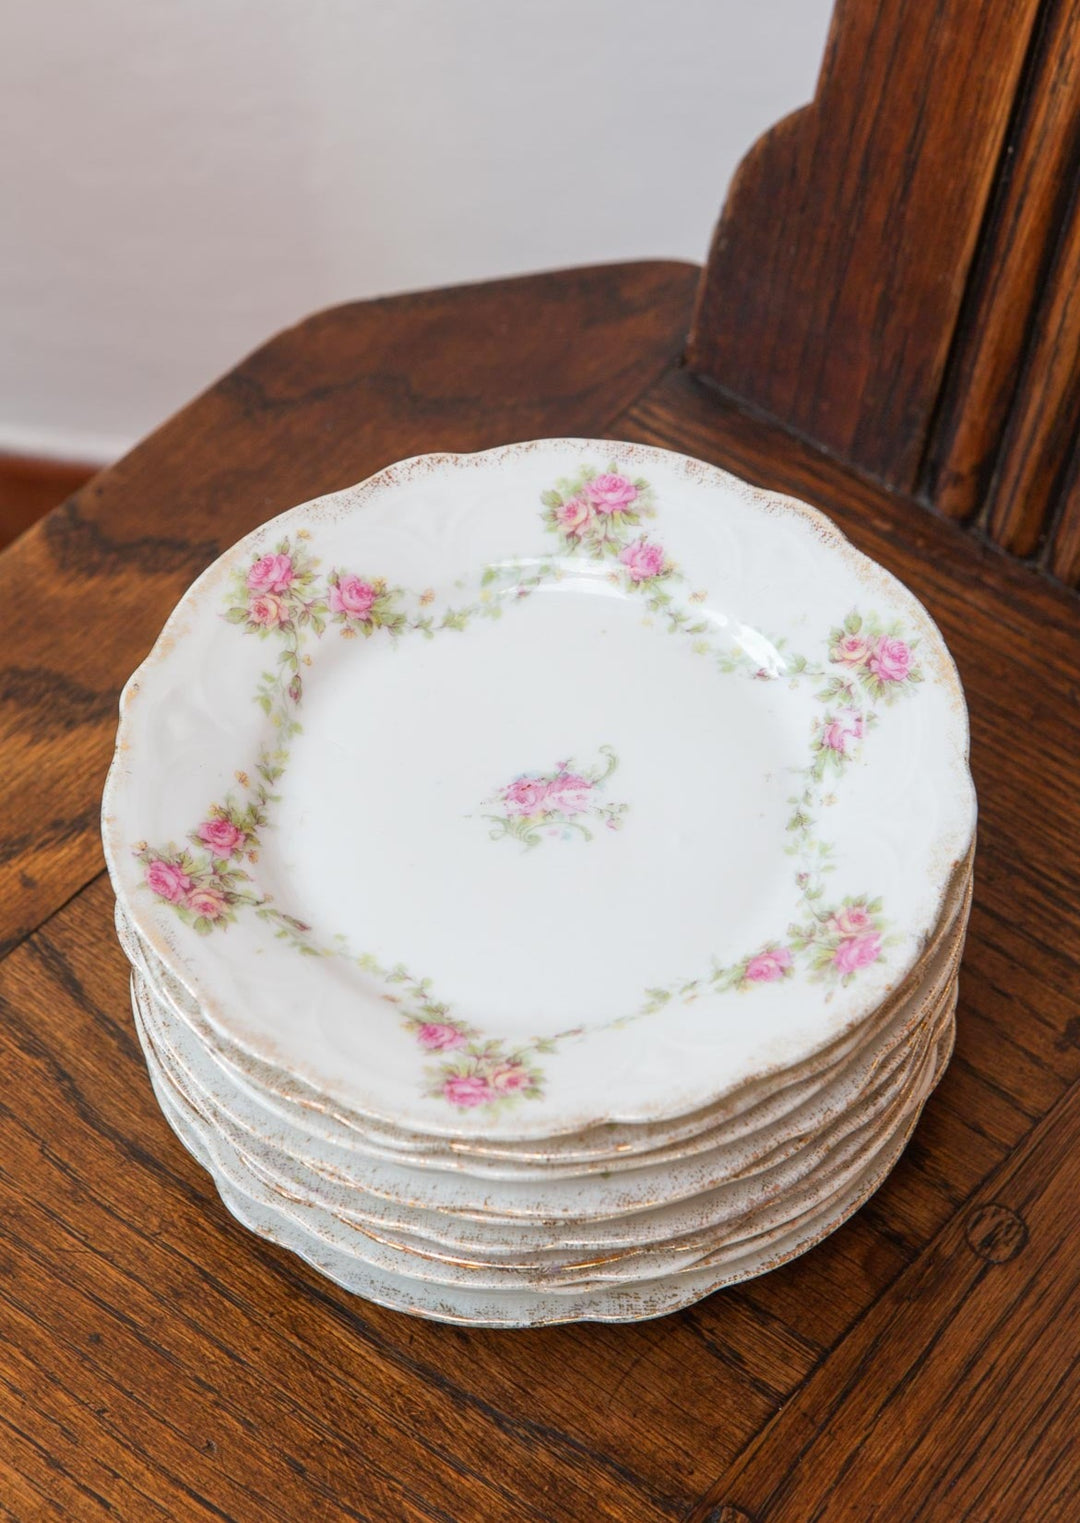 juego antiguos platos postre franceses porcelana con florecillas